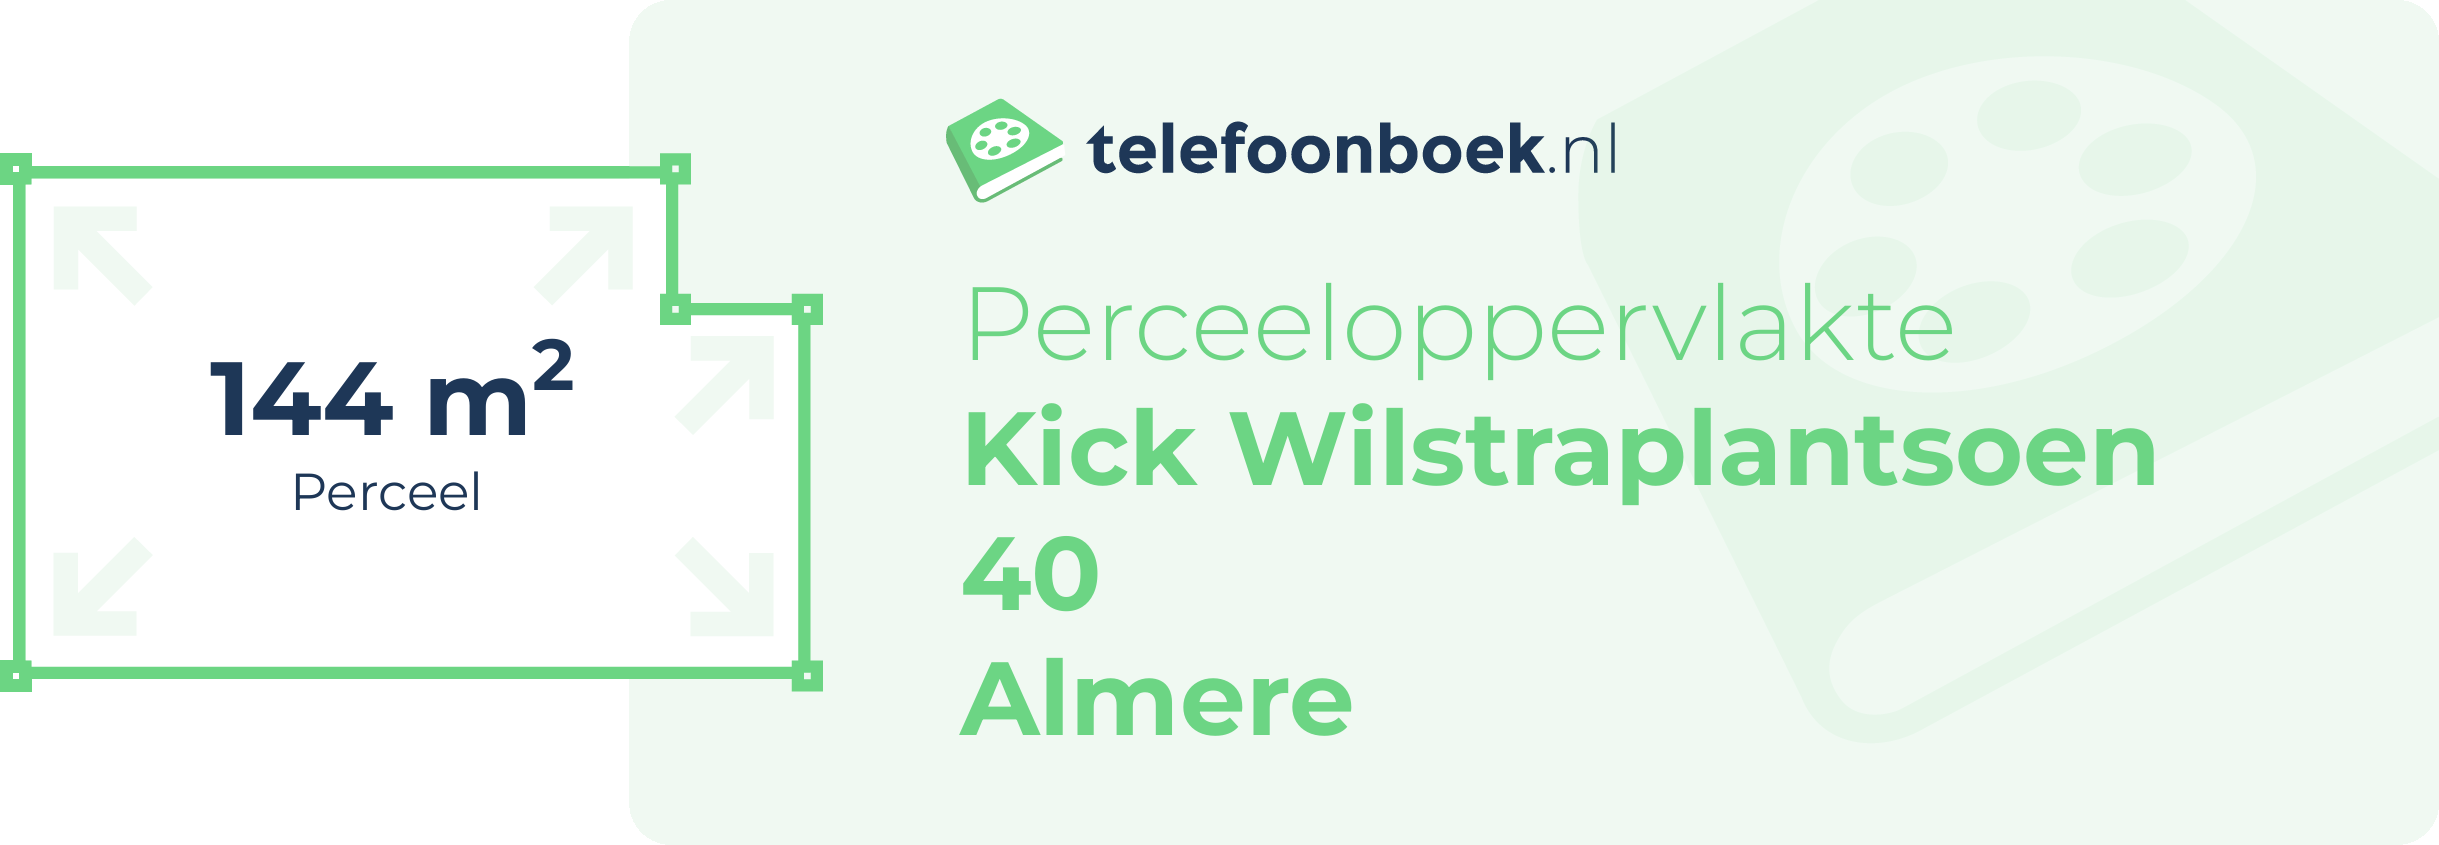 Perceeloppervlakte Kick Wilstraplantsoen 40 Almere